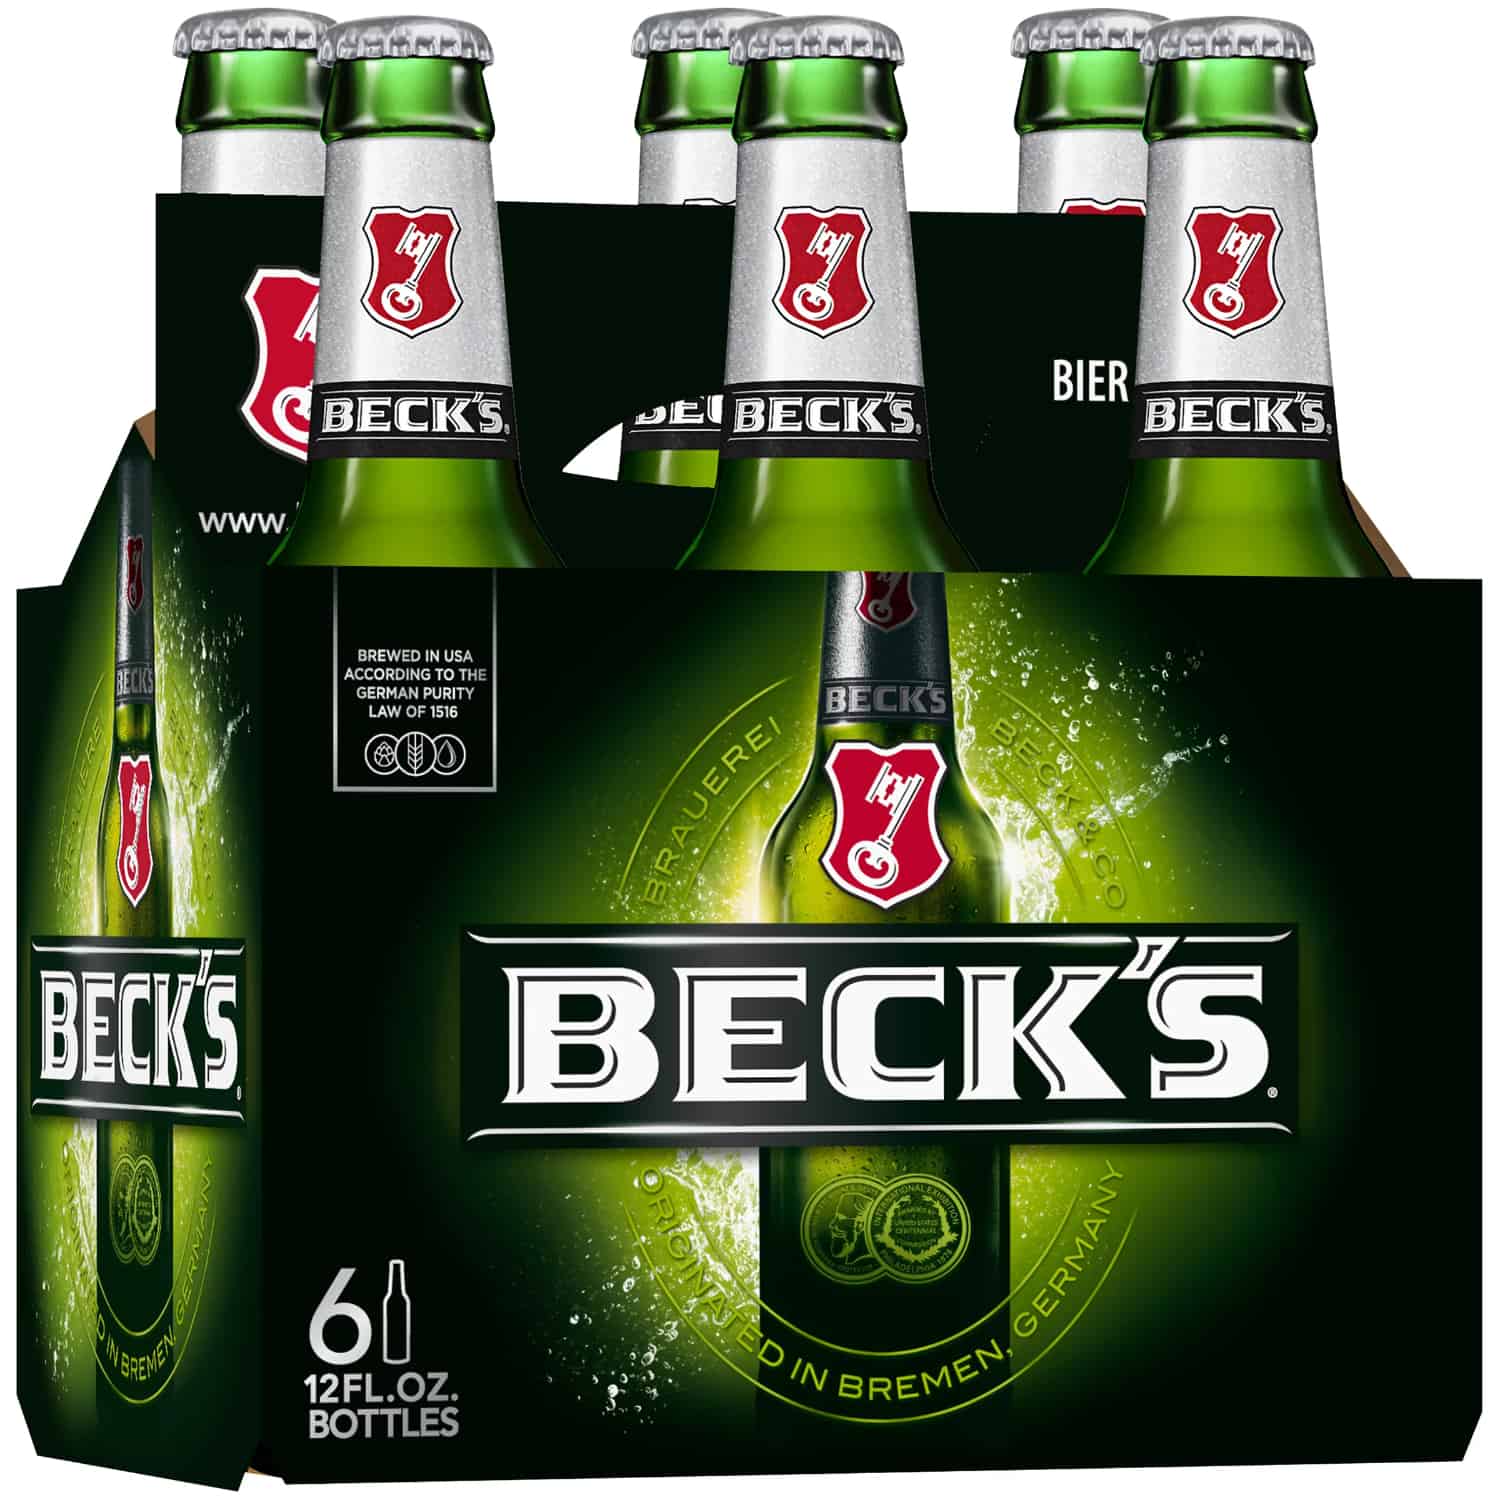 6-pack of beer